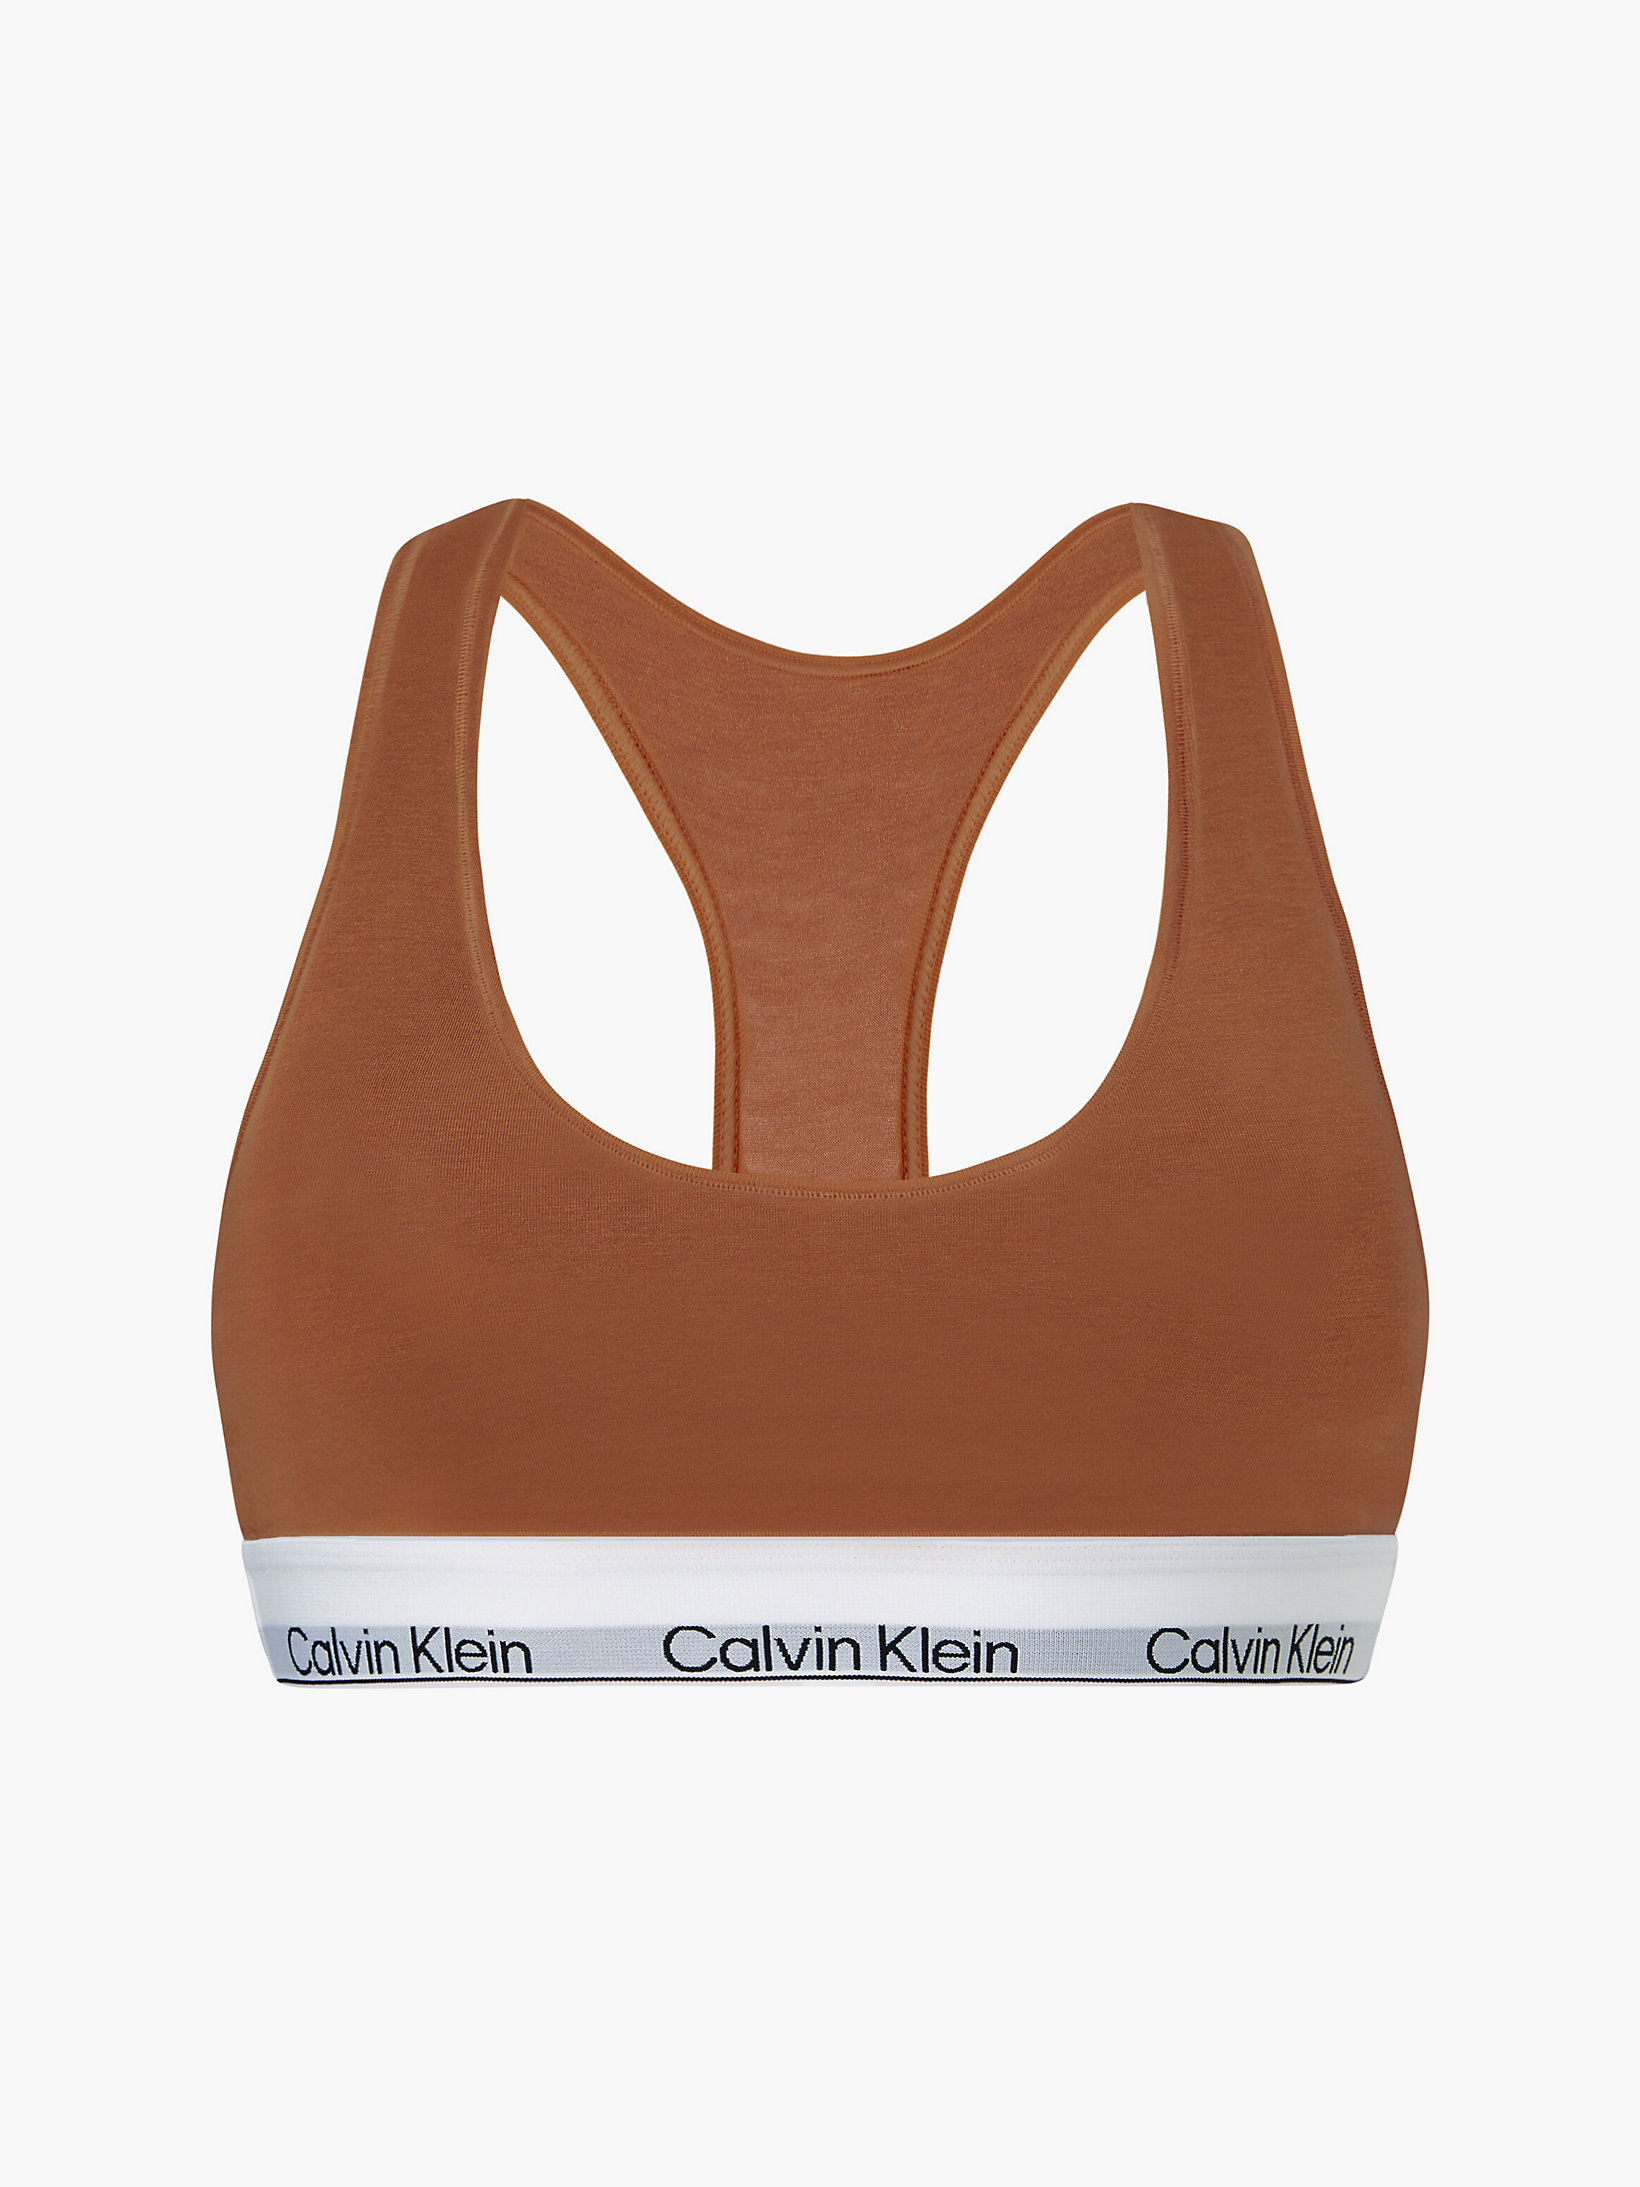 Warm Bronze Bralette - Modern Cotton undefined women Calvin Klein